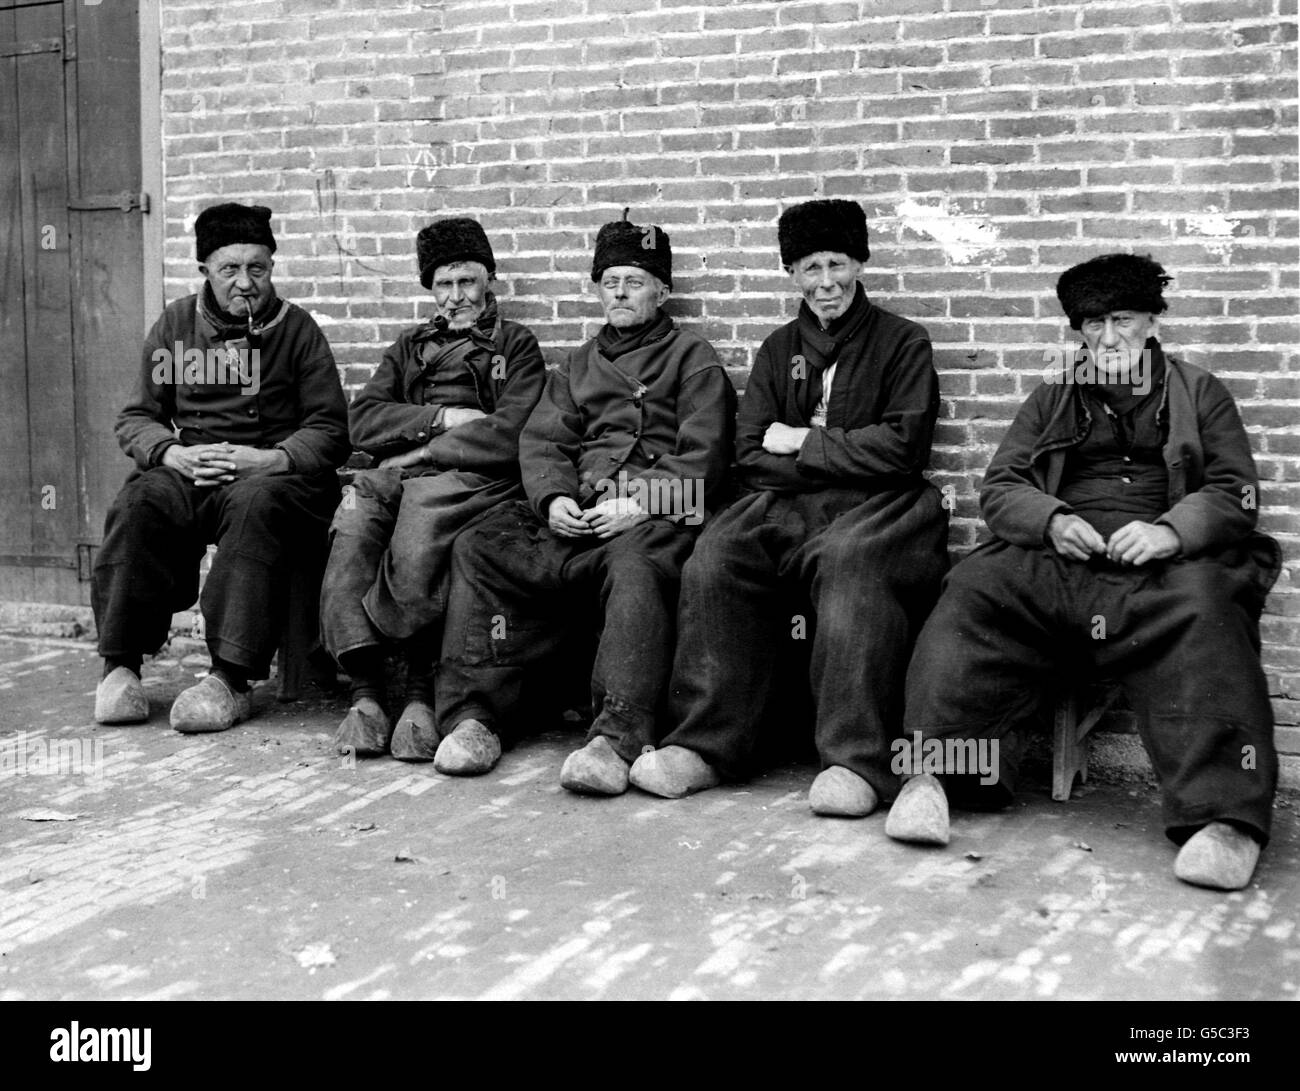 HOLLAND 1910: Eine Gruppe älterer Holländer in traditioneller Tracht in Marken, Niederlande. Die Männer tragen alle Clogs und Pelzmützen. Stockfoto